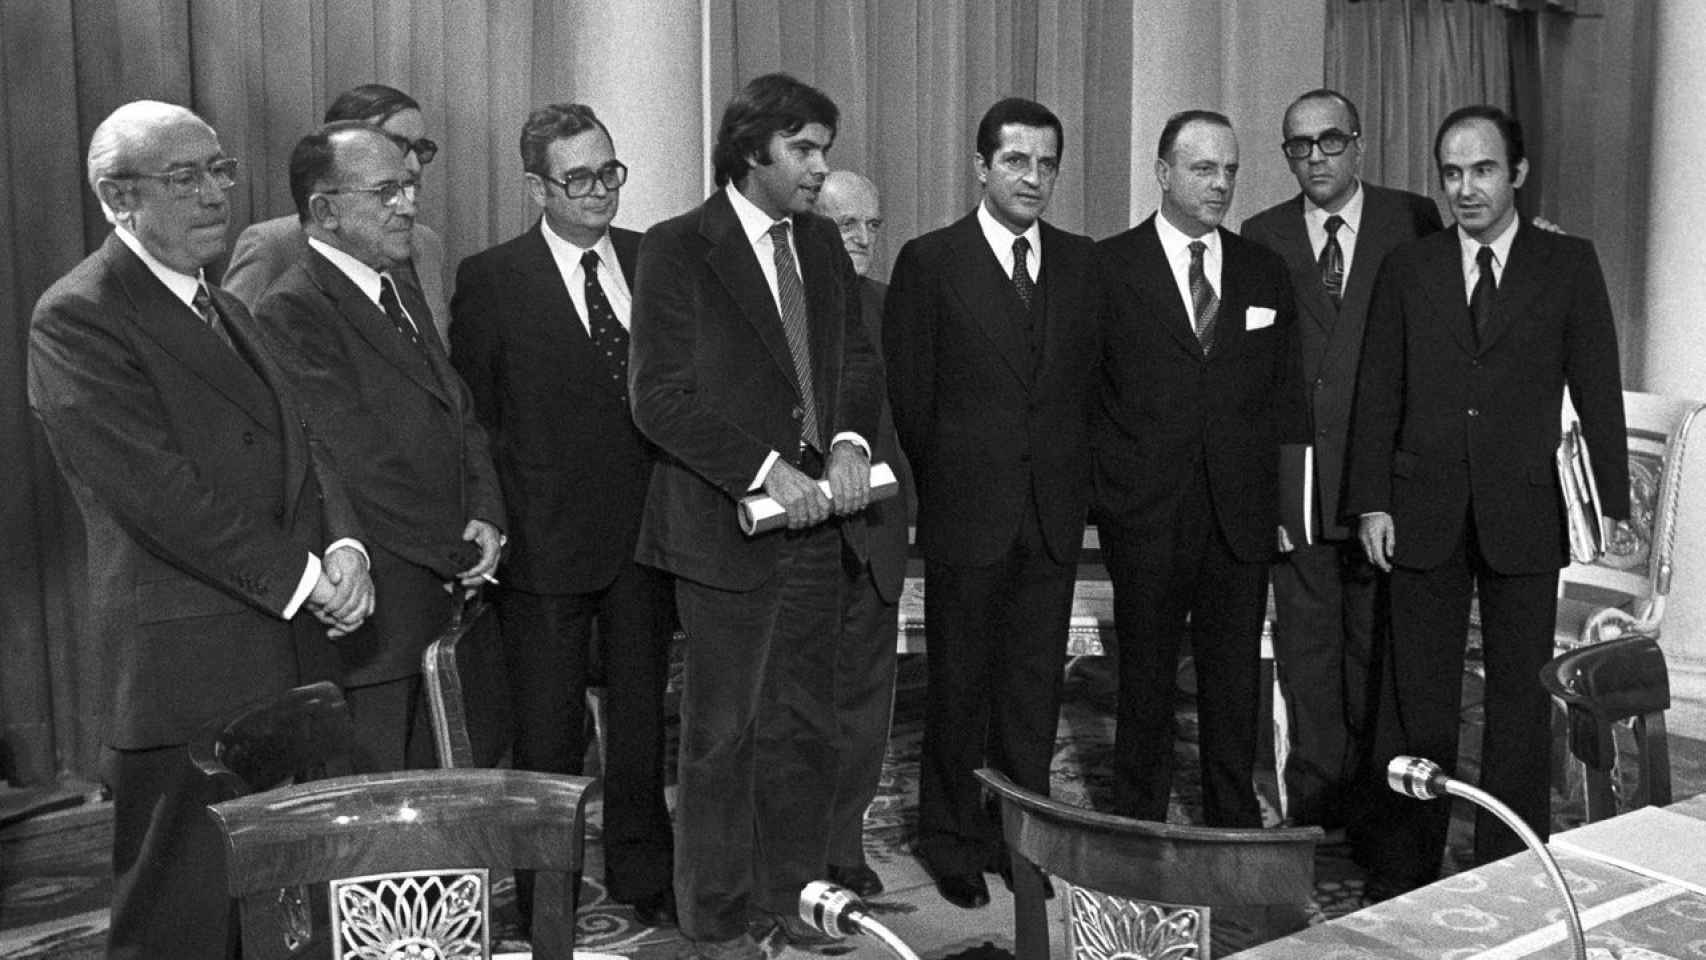 Los dirigente políticos que firmaron los Pactos de la Moncloa, reunidos.